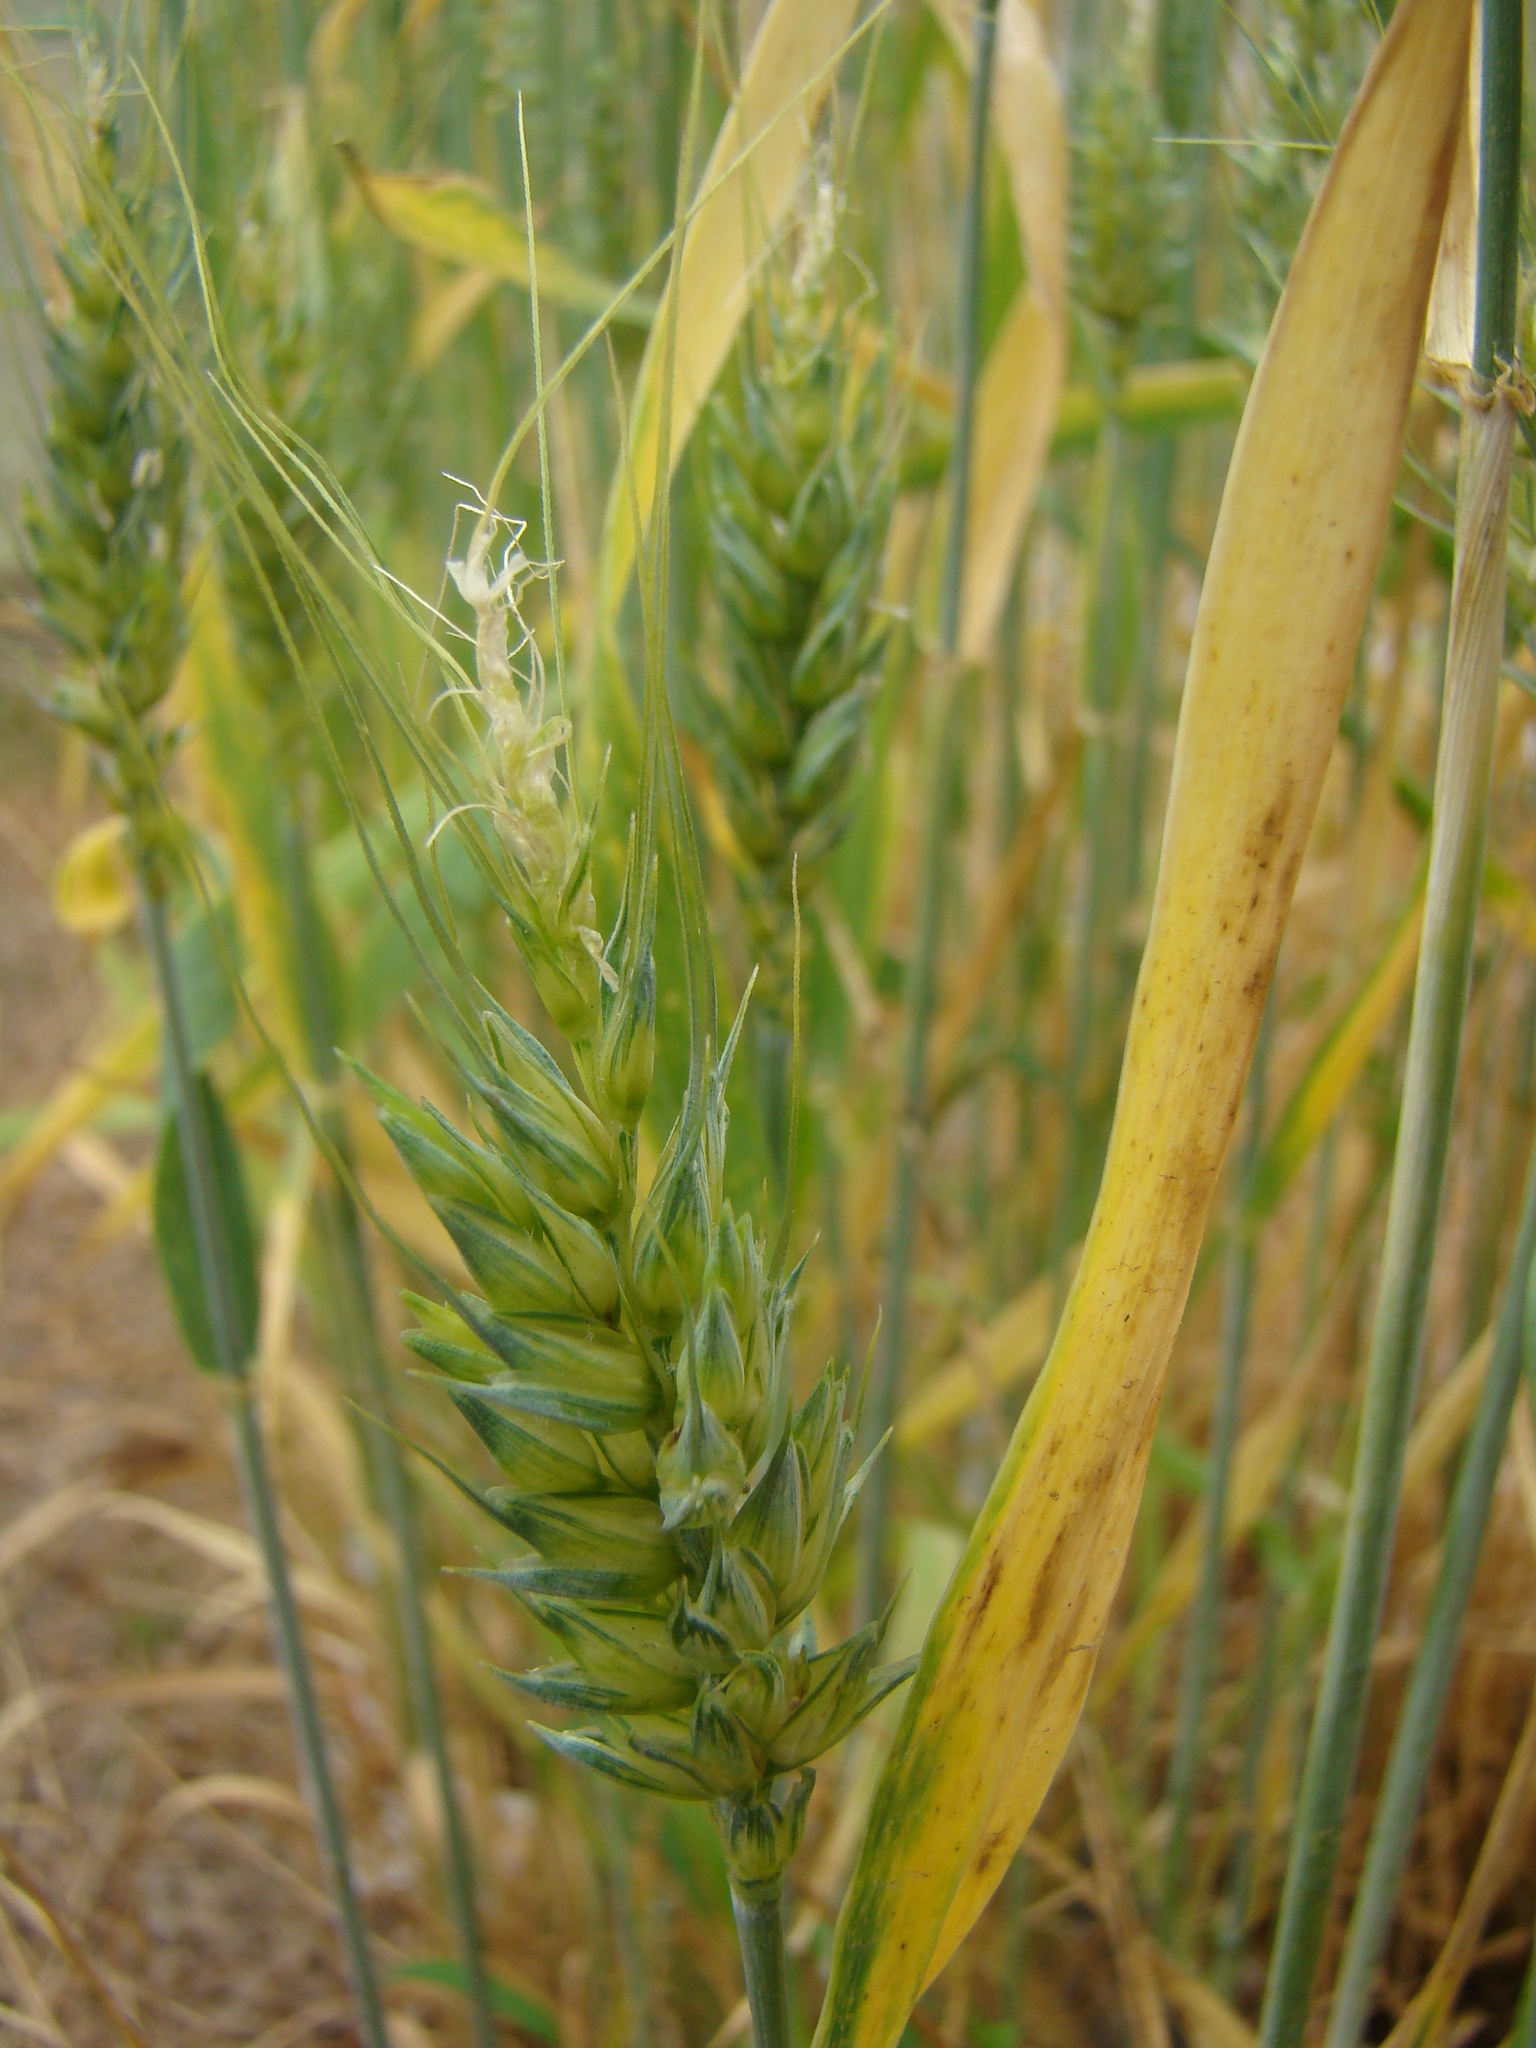 Esterilidade apical em espiga de trigo infectada pelo BYDV